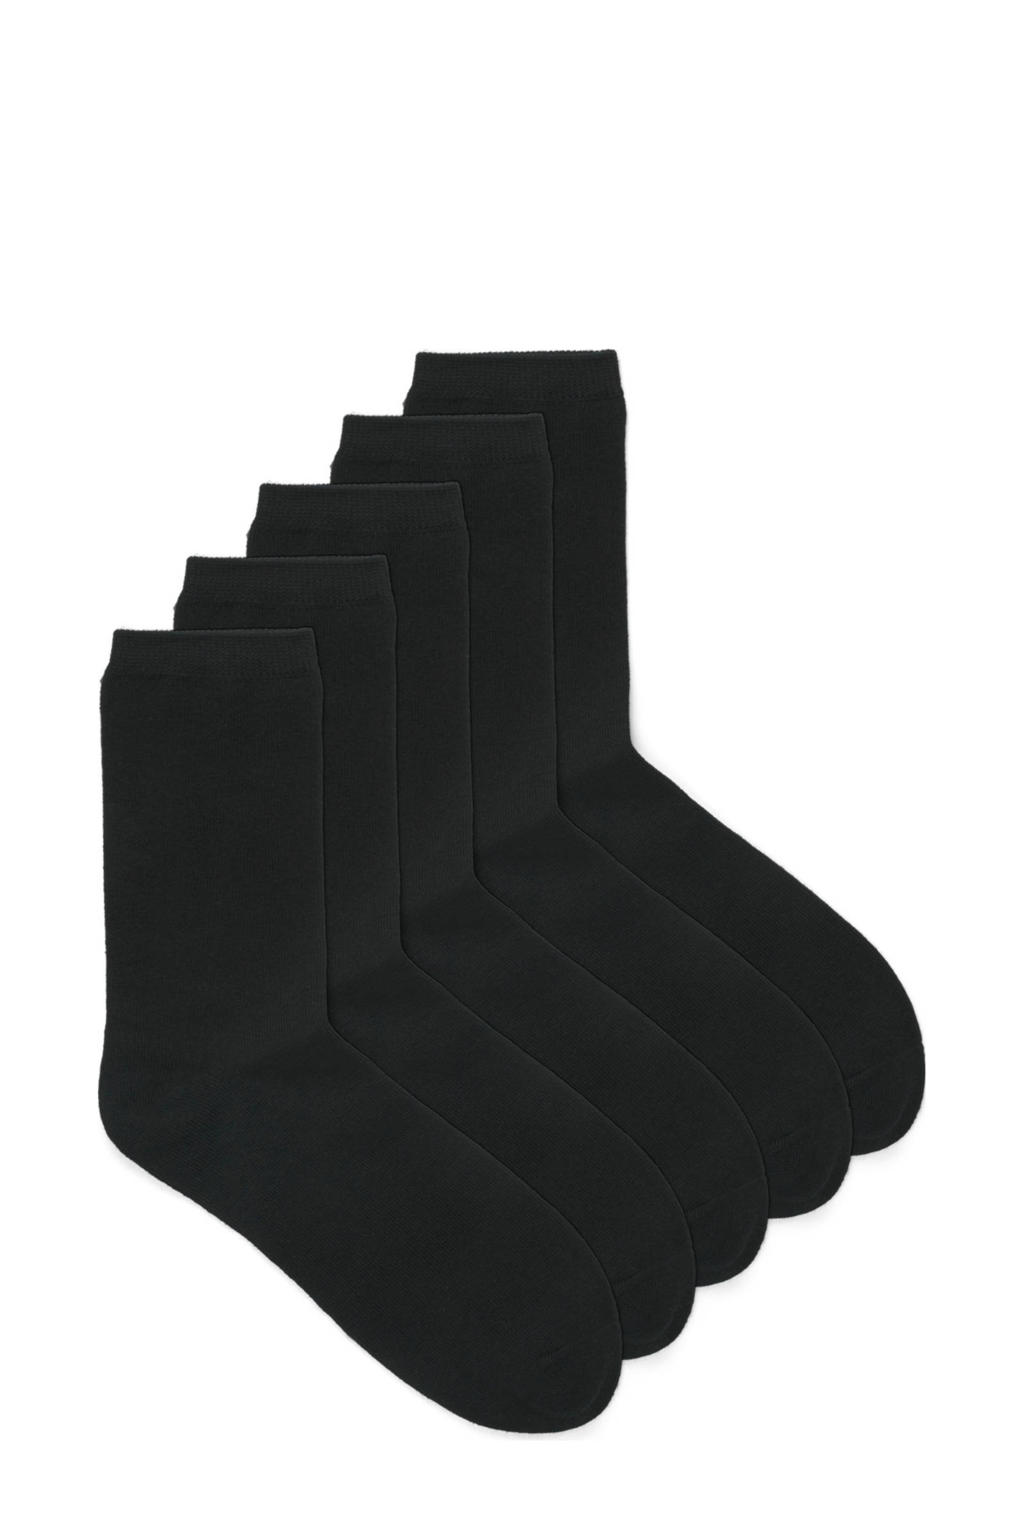 JACK & JONES JUNIOR sokken JACBLACK - set van 5 zwart